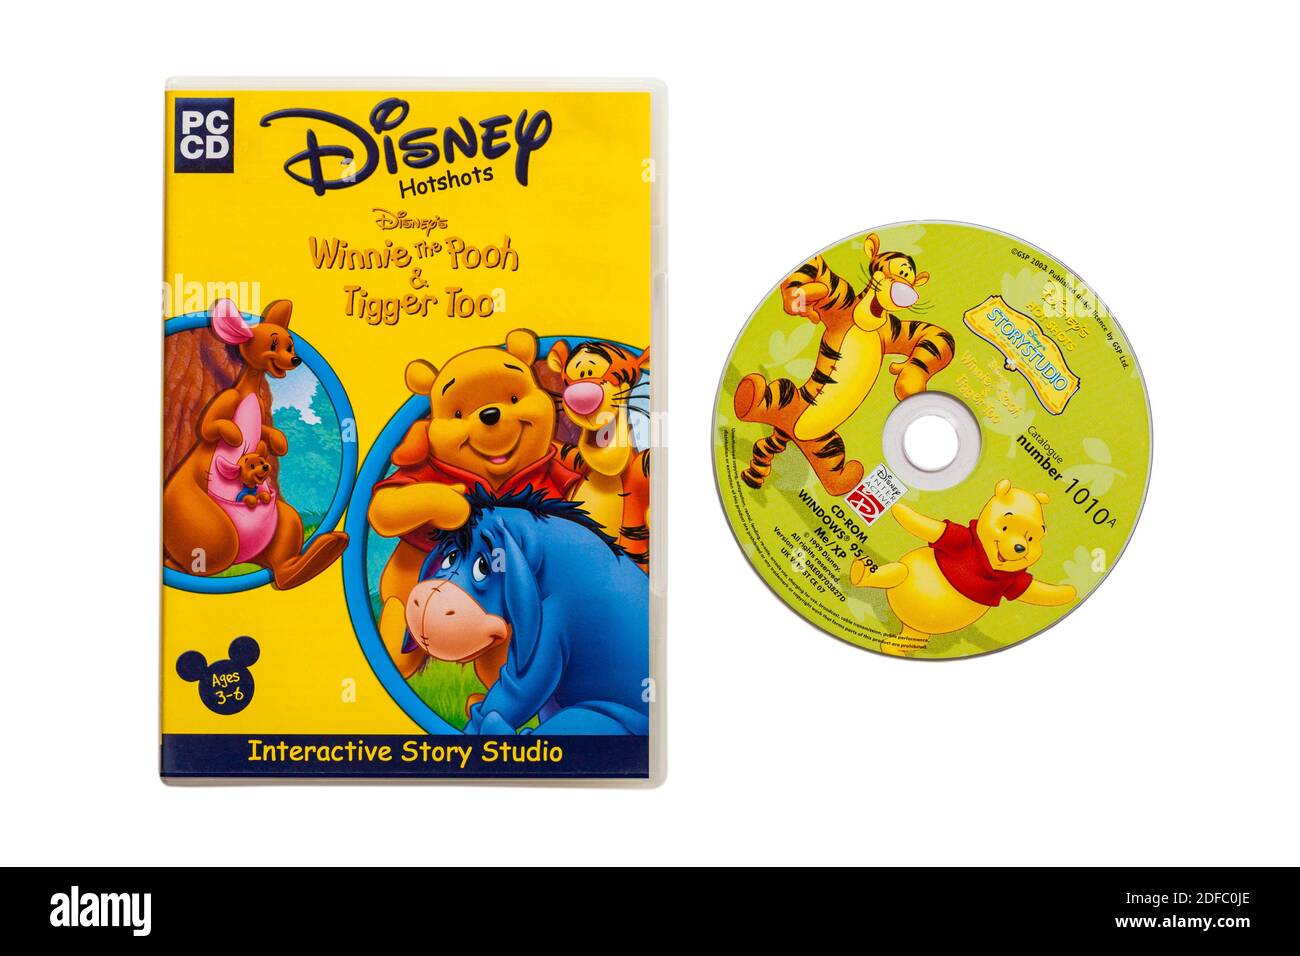 Disney Hotshots Disney's Winnie the Pooh & Tigger troppo PC Studio di storia interattivo del CD isolato su sfondo bianco - per età 3-6 anni Foto Stock